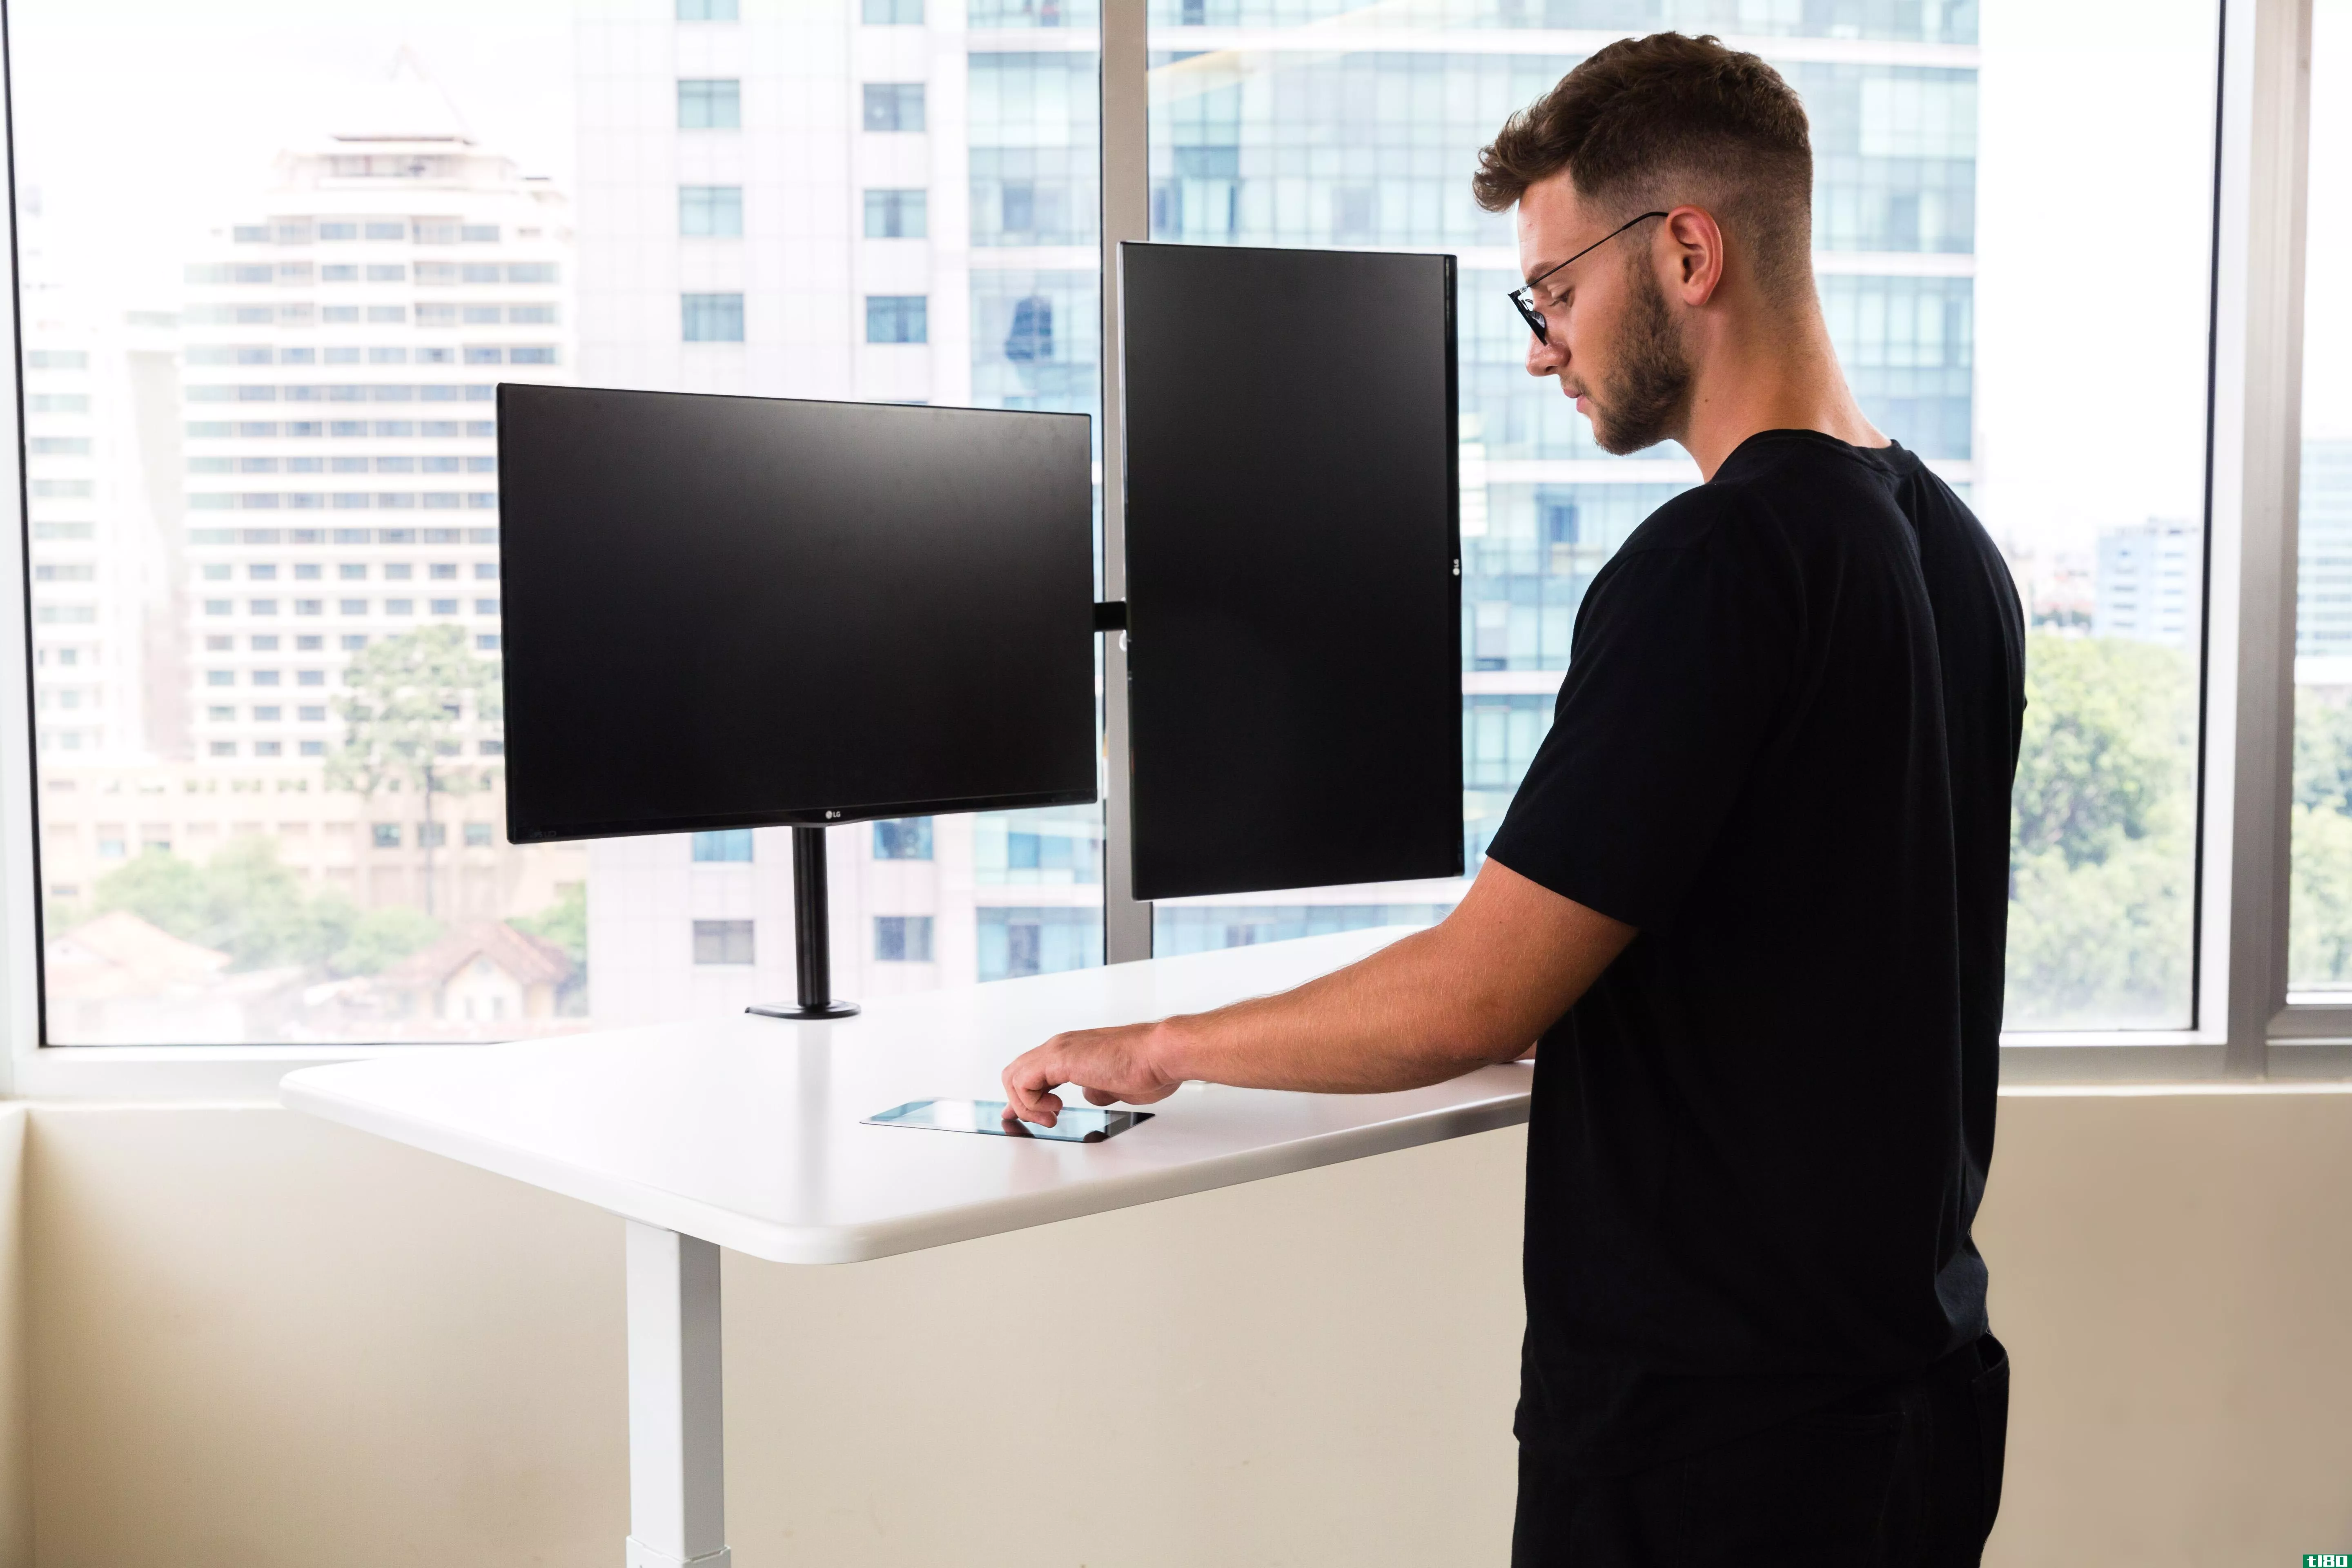 这个“人工智能”的办公桌其实只是内置了一个触摸屏平板电脑